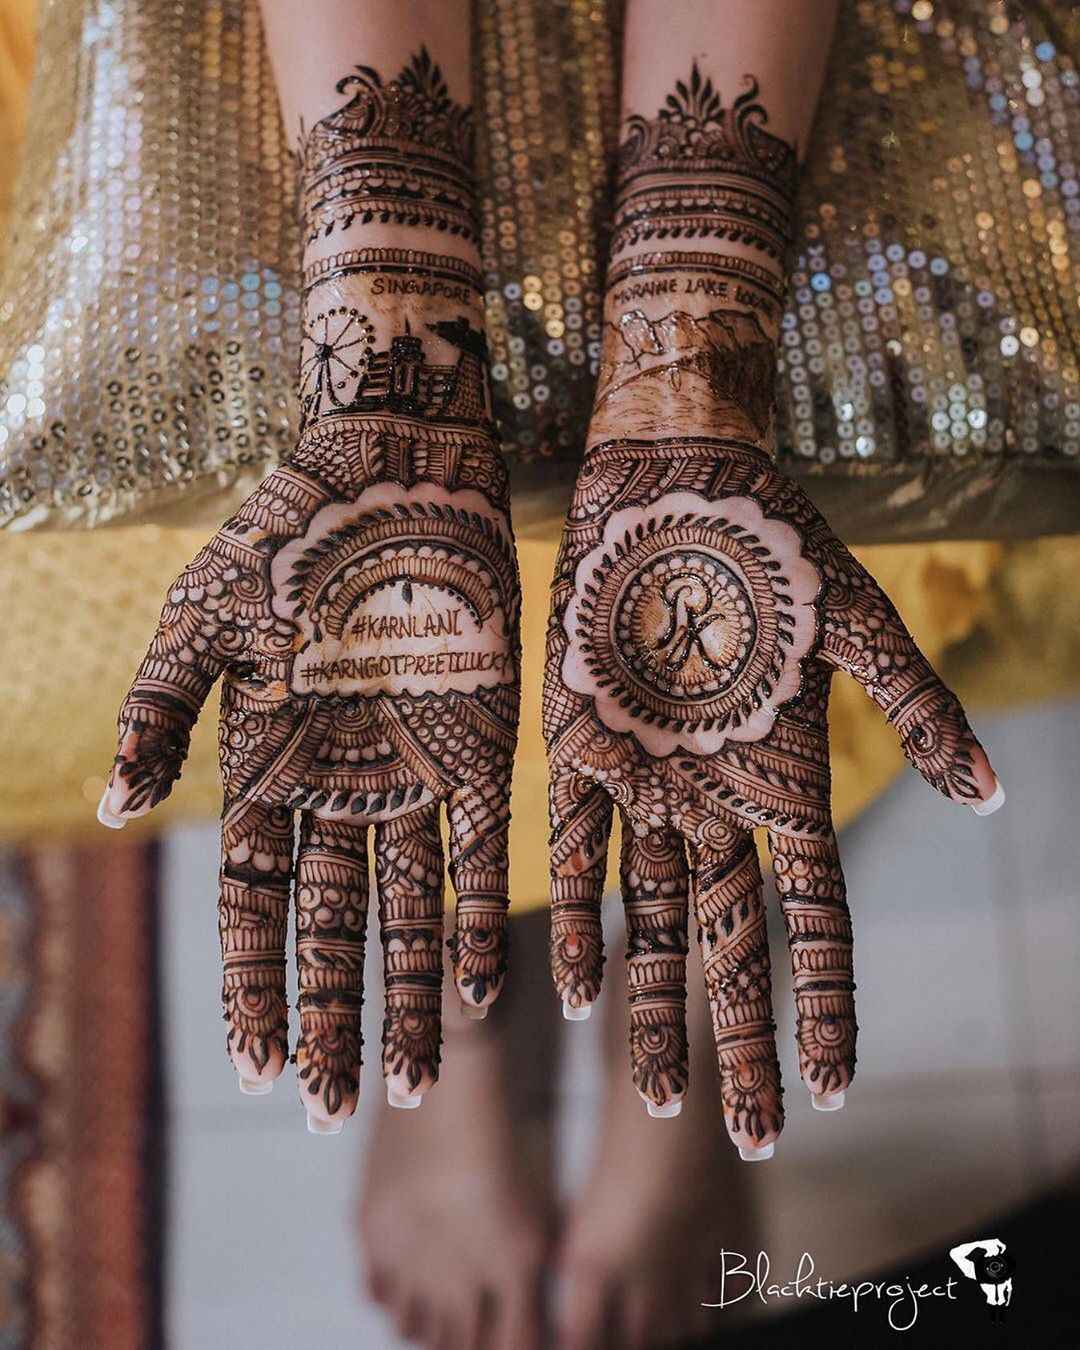 Mehendi designs in Covid era: Bride and groom in masks - Hindustan Times